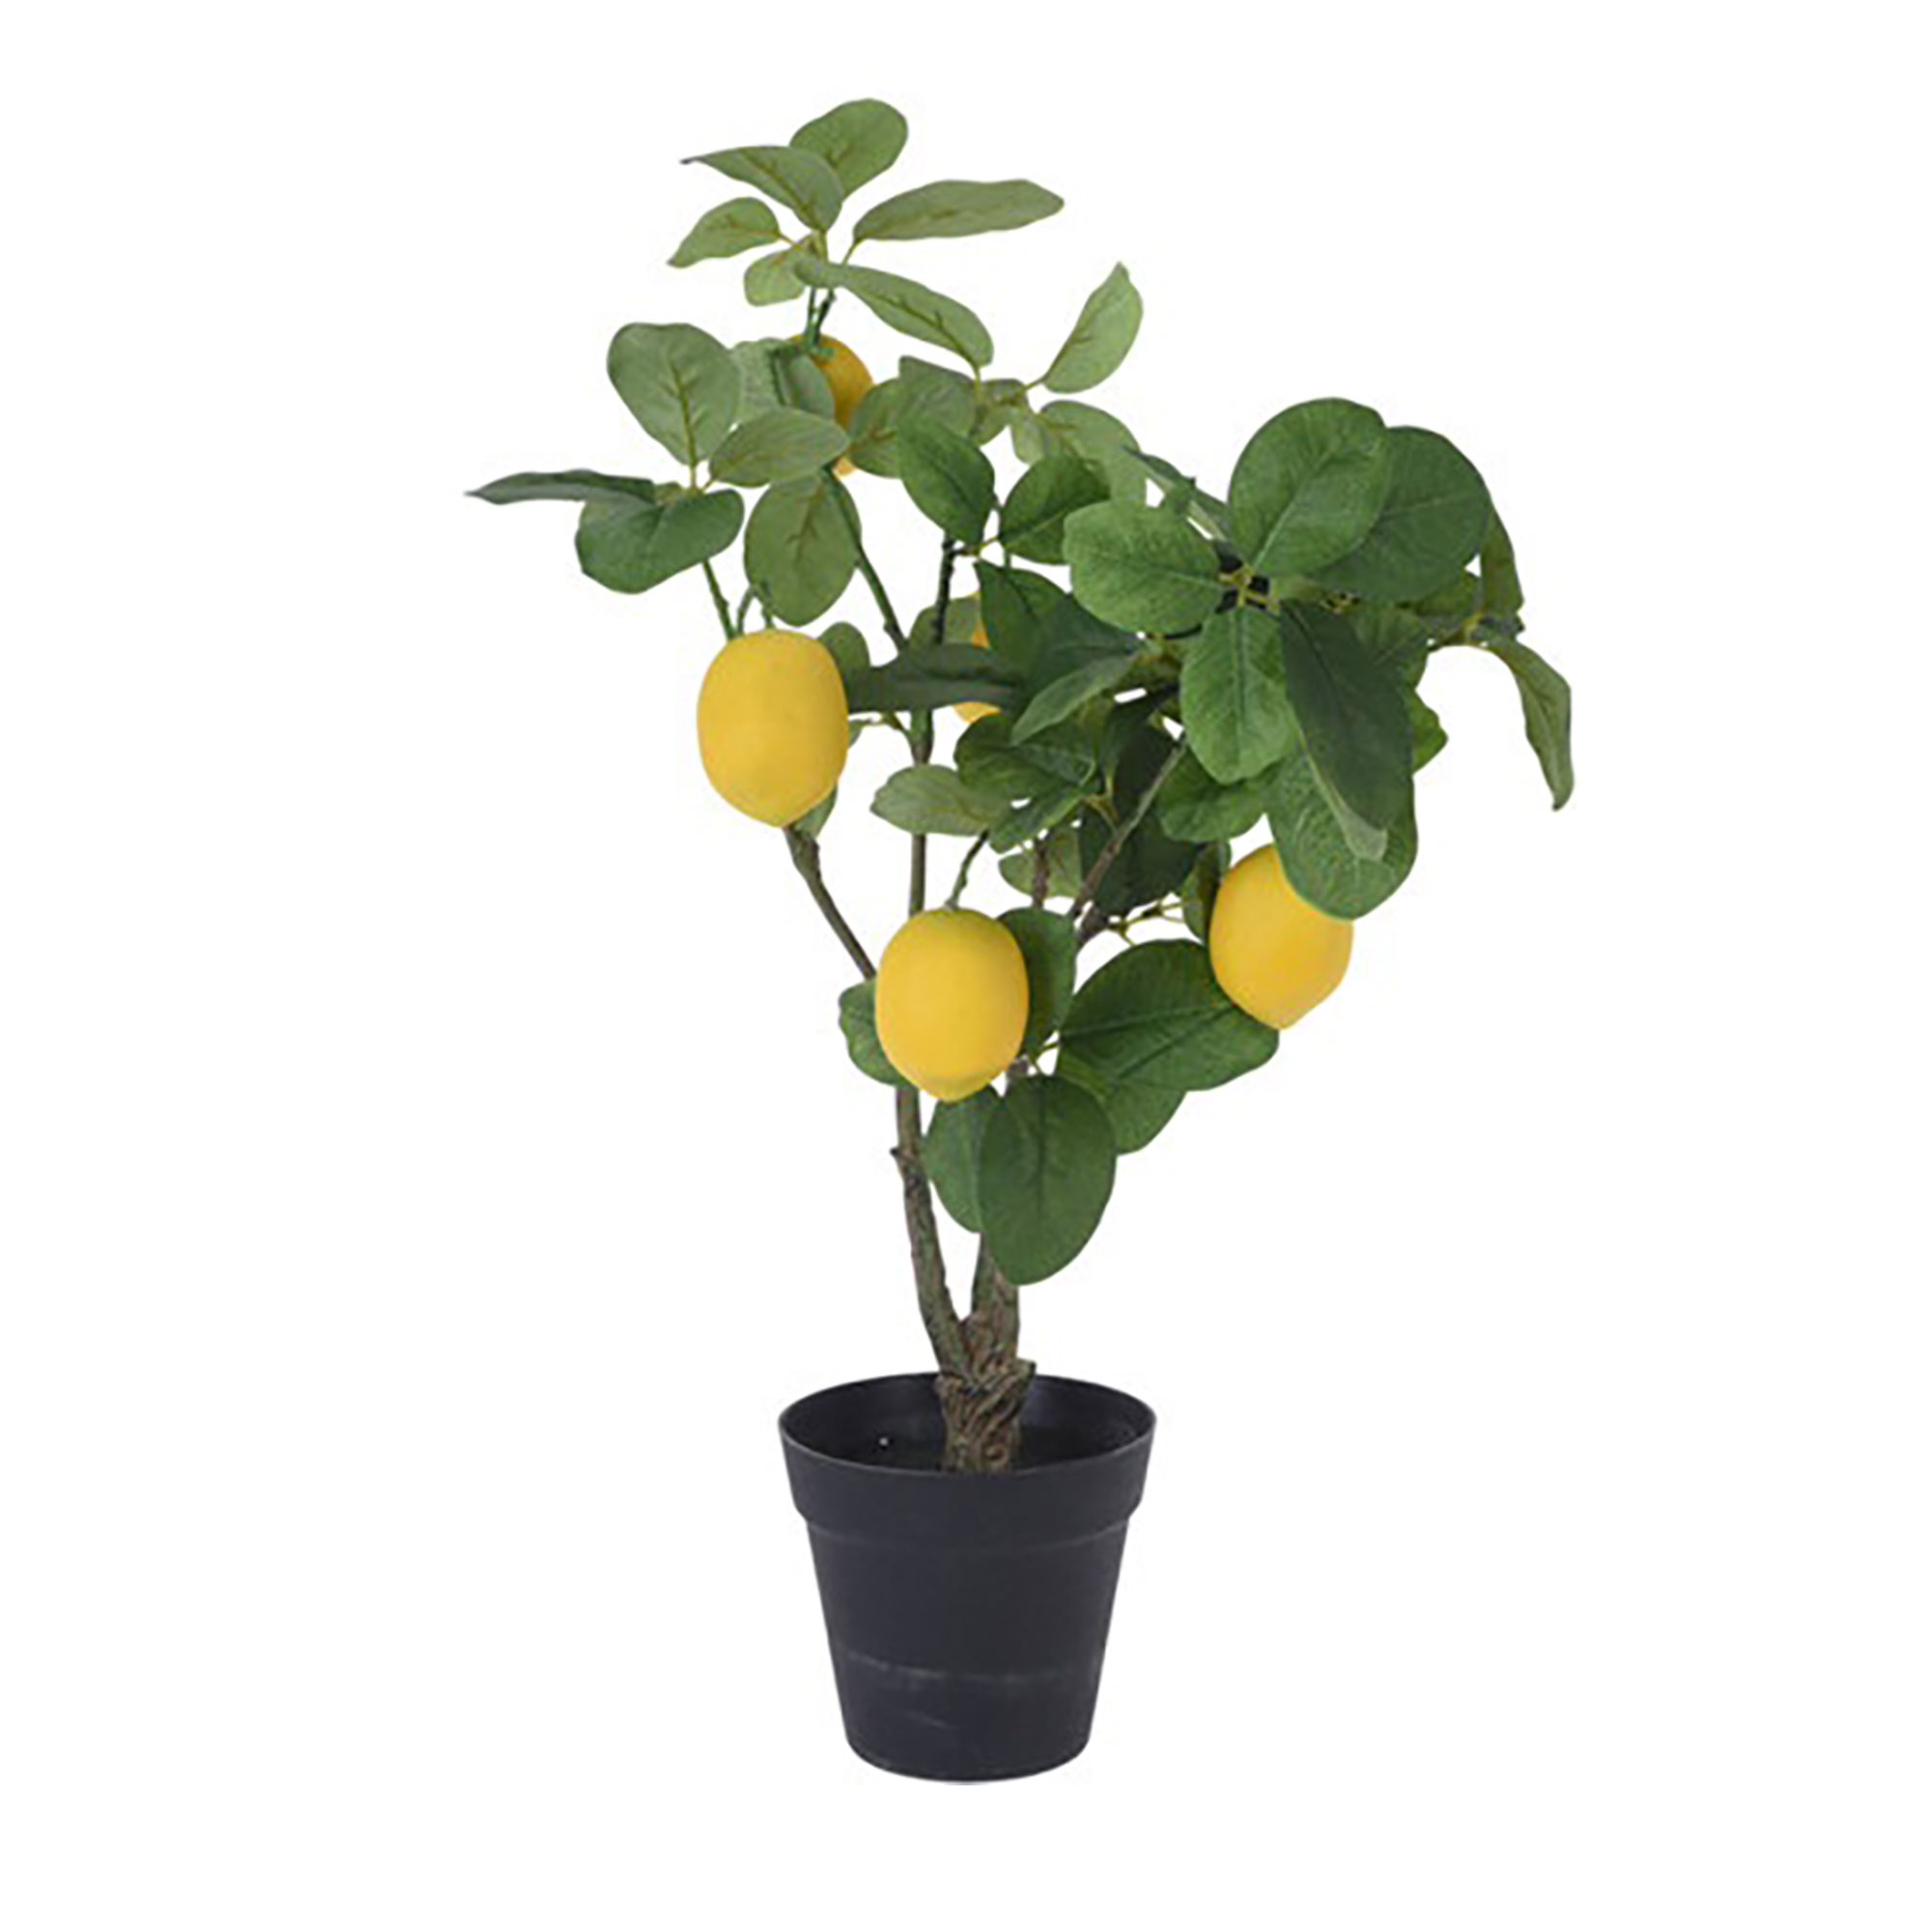 Afbeelding van Limoenboom in pot 60 cm